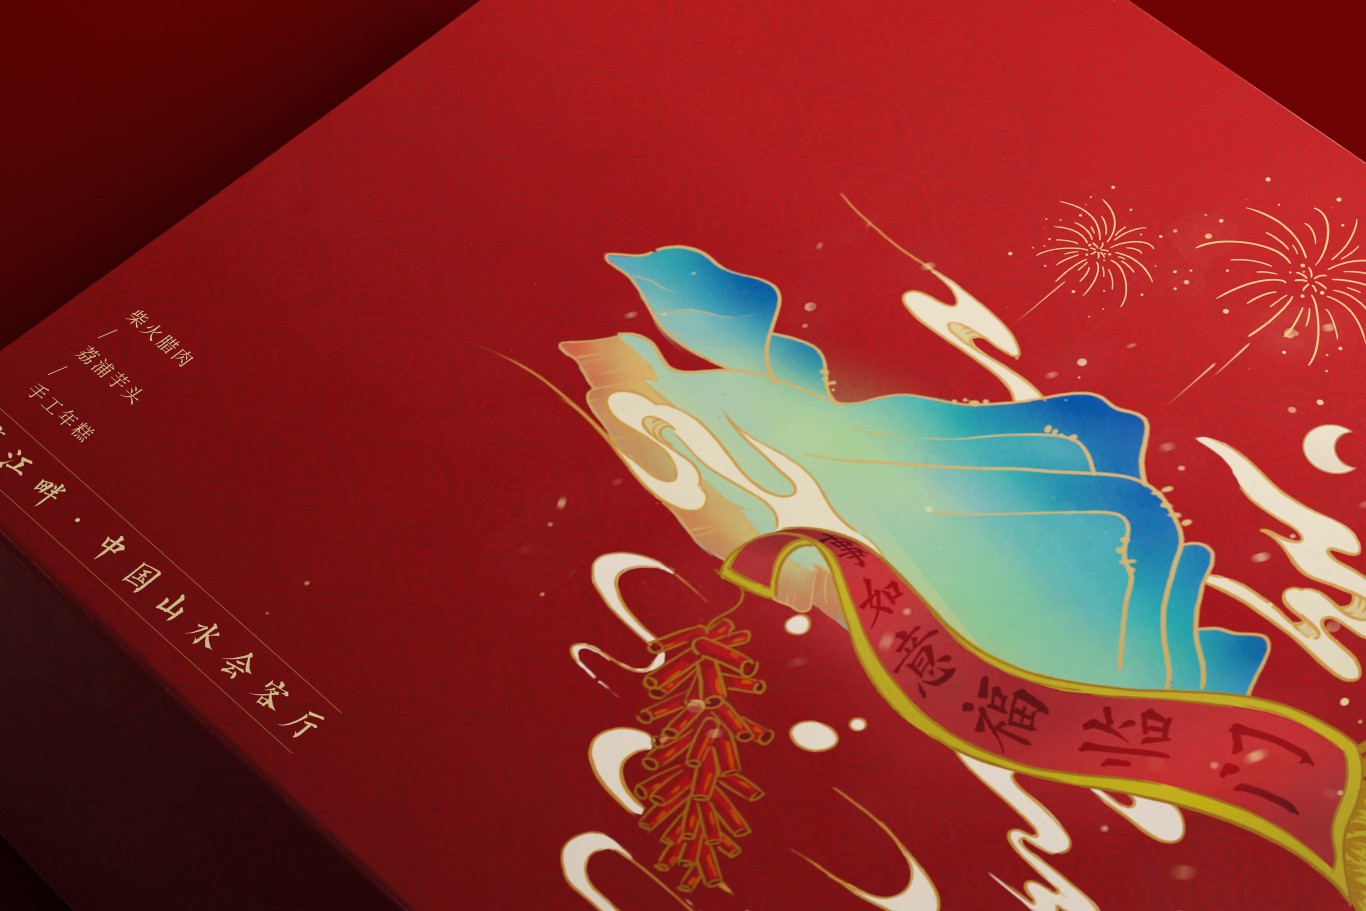 水印长廊酒店新年礼盒包装设计图4